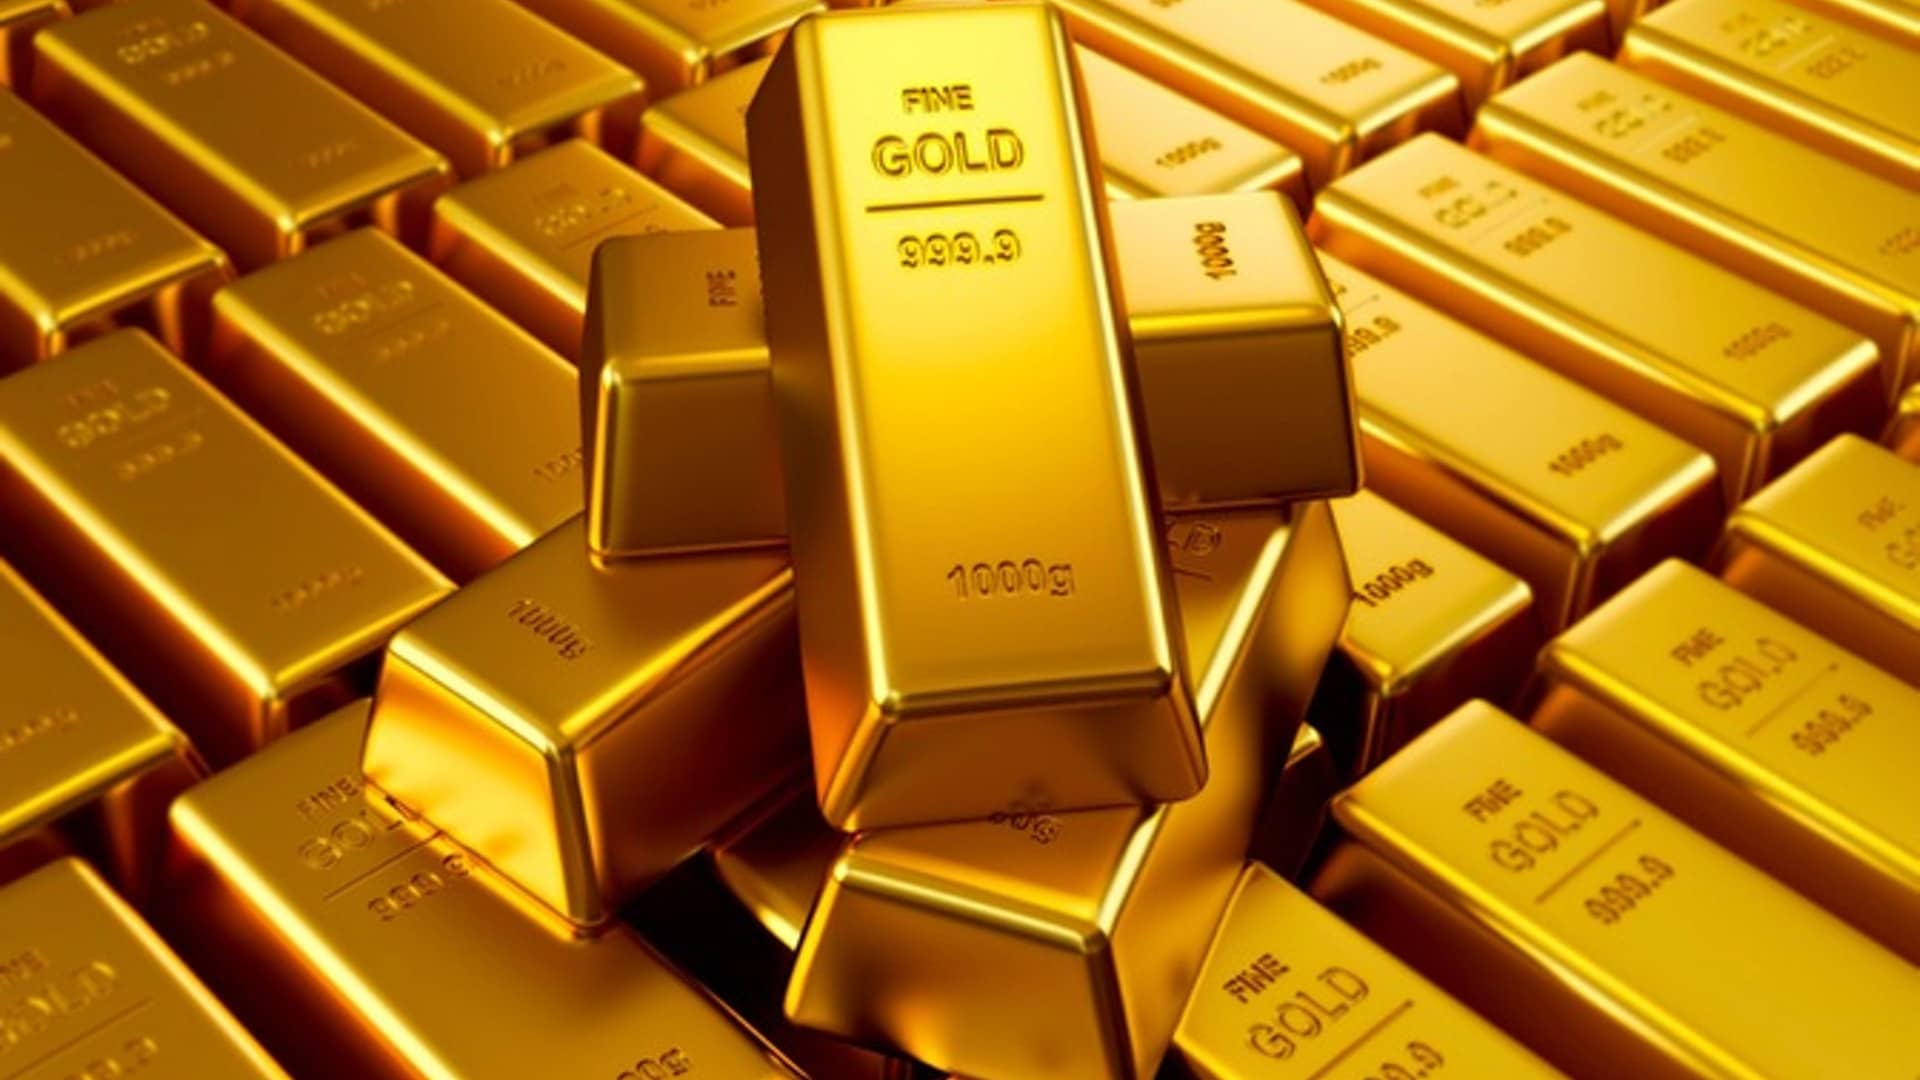 Sovereign gold bond